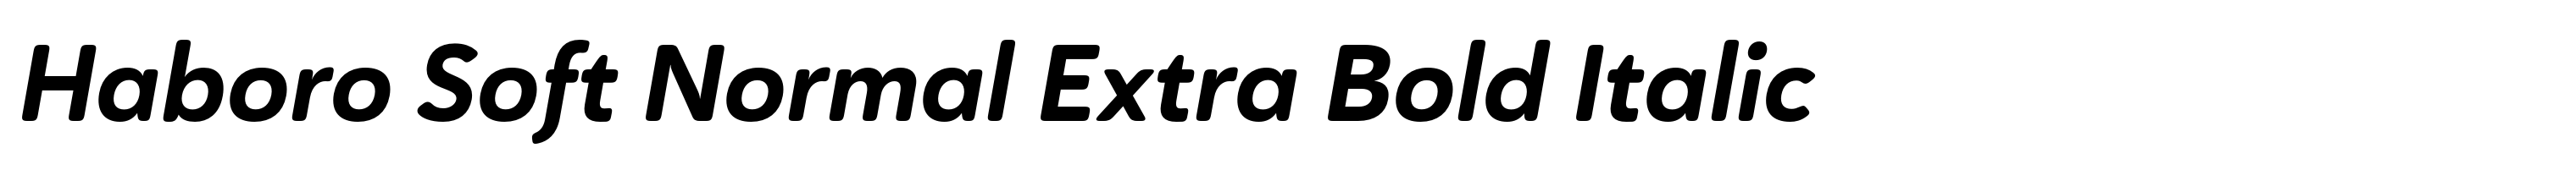 Haboro Soft Normal Extra Bold Italic